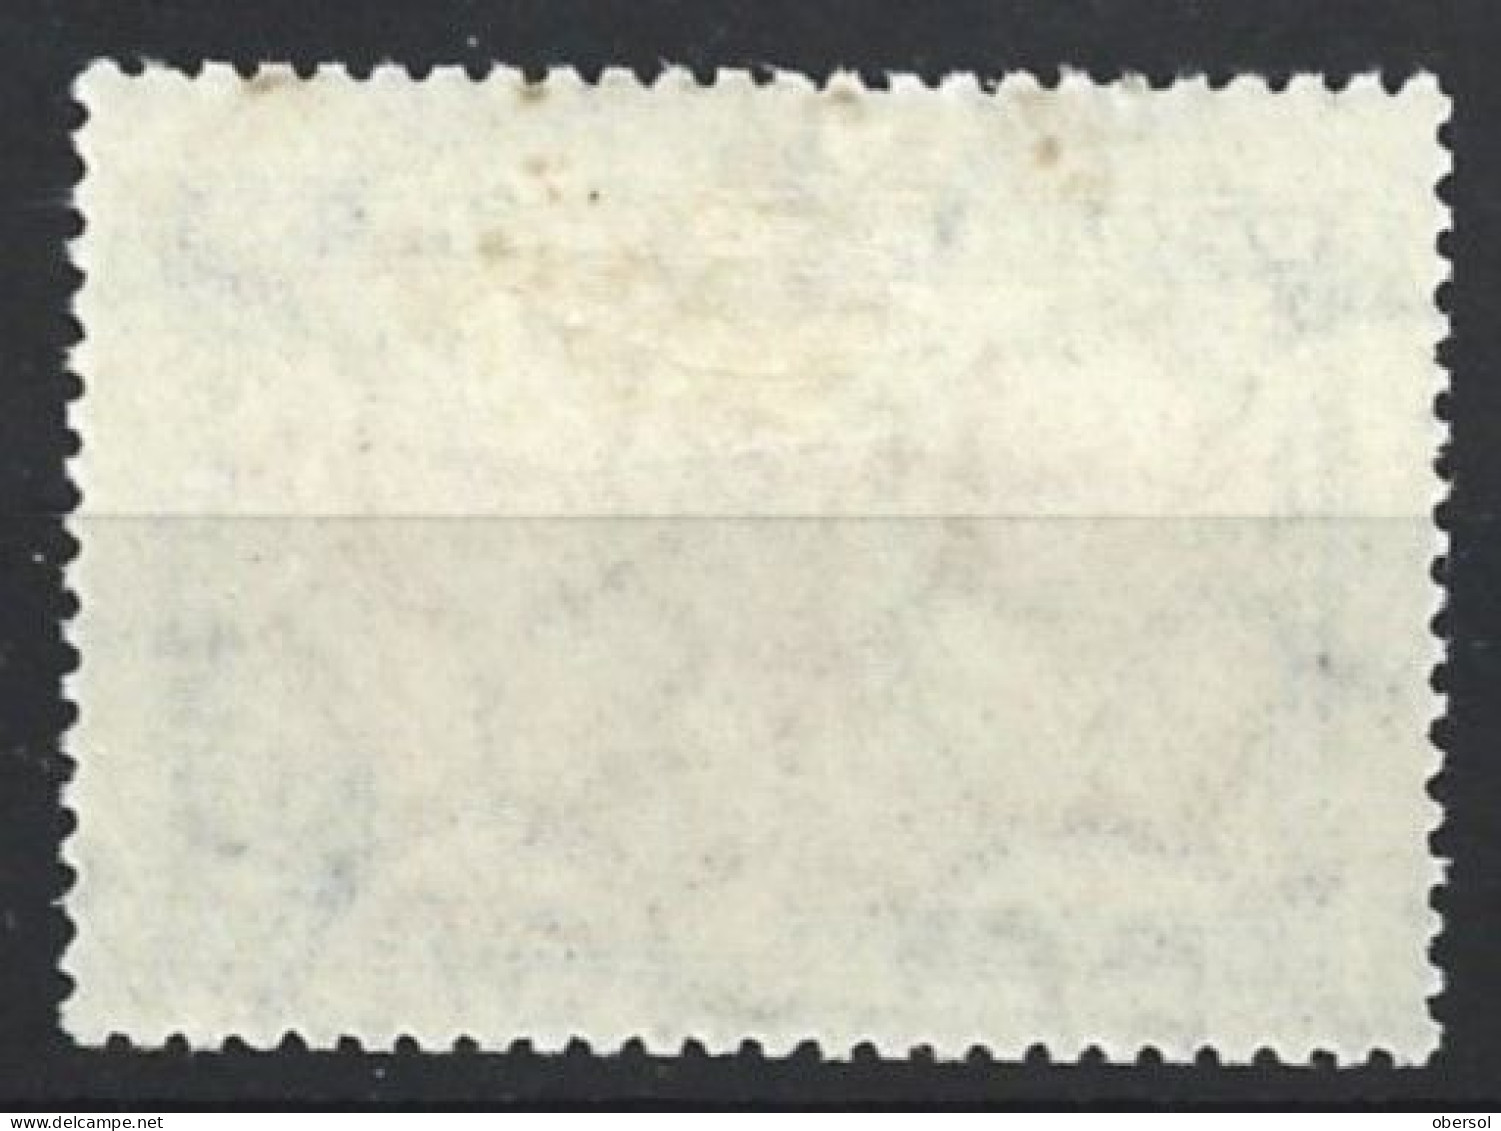 Argentina 1930 Revolution $2 MH Stamp CV:  USD 45 - Ungebraucht